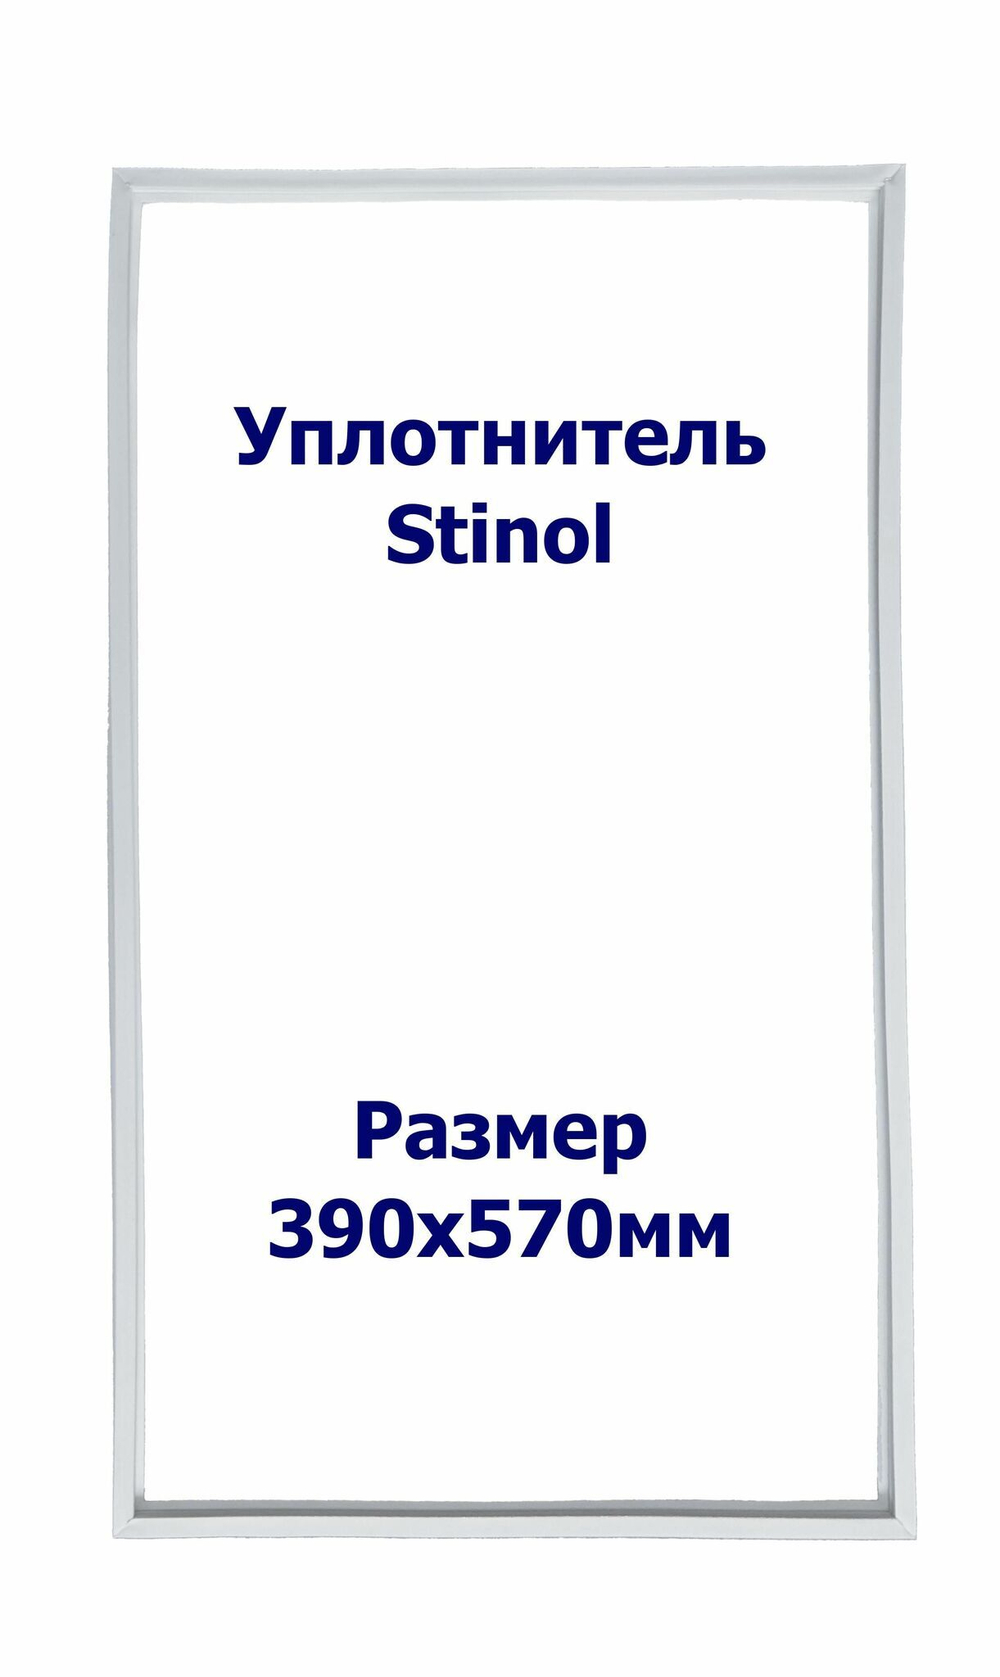 Уплотнитель Stinol 104. с.к. Размер - 390х570 мм. ИН